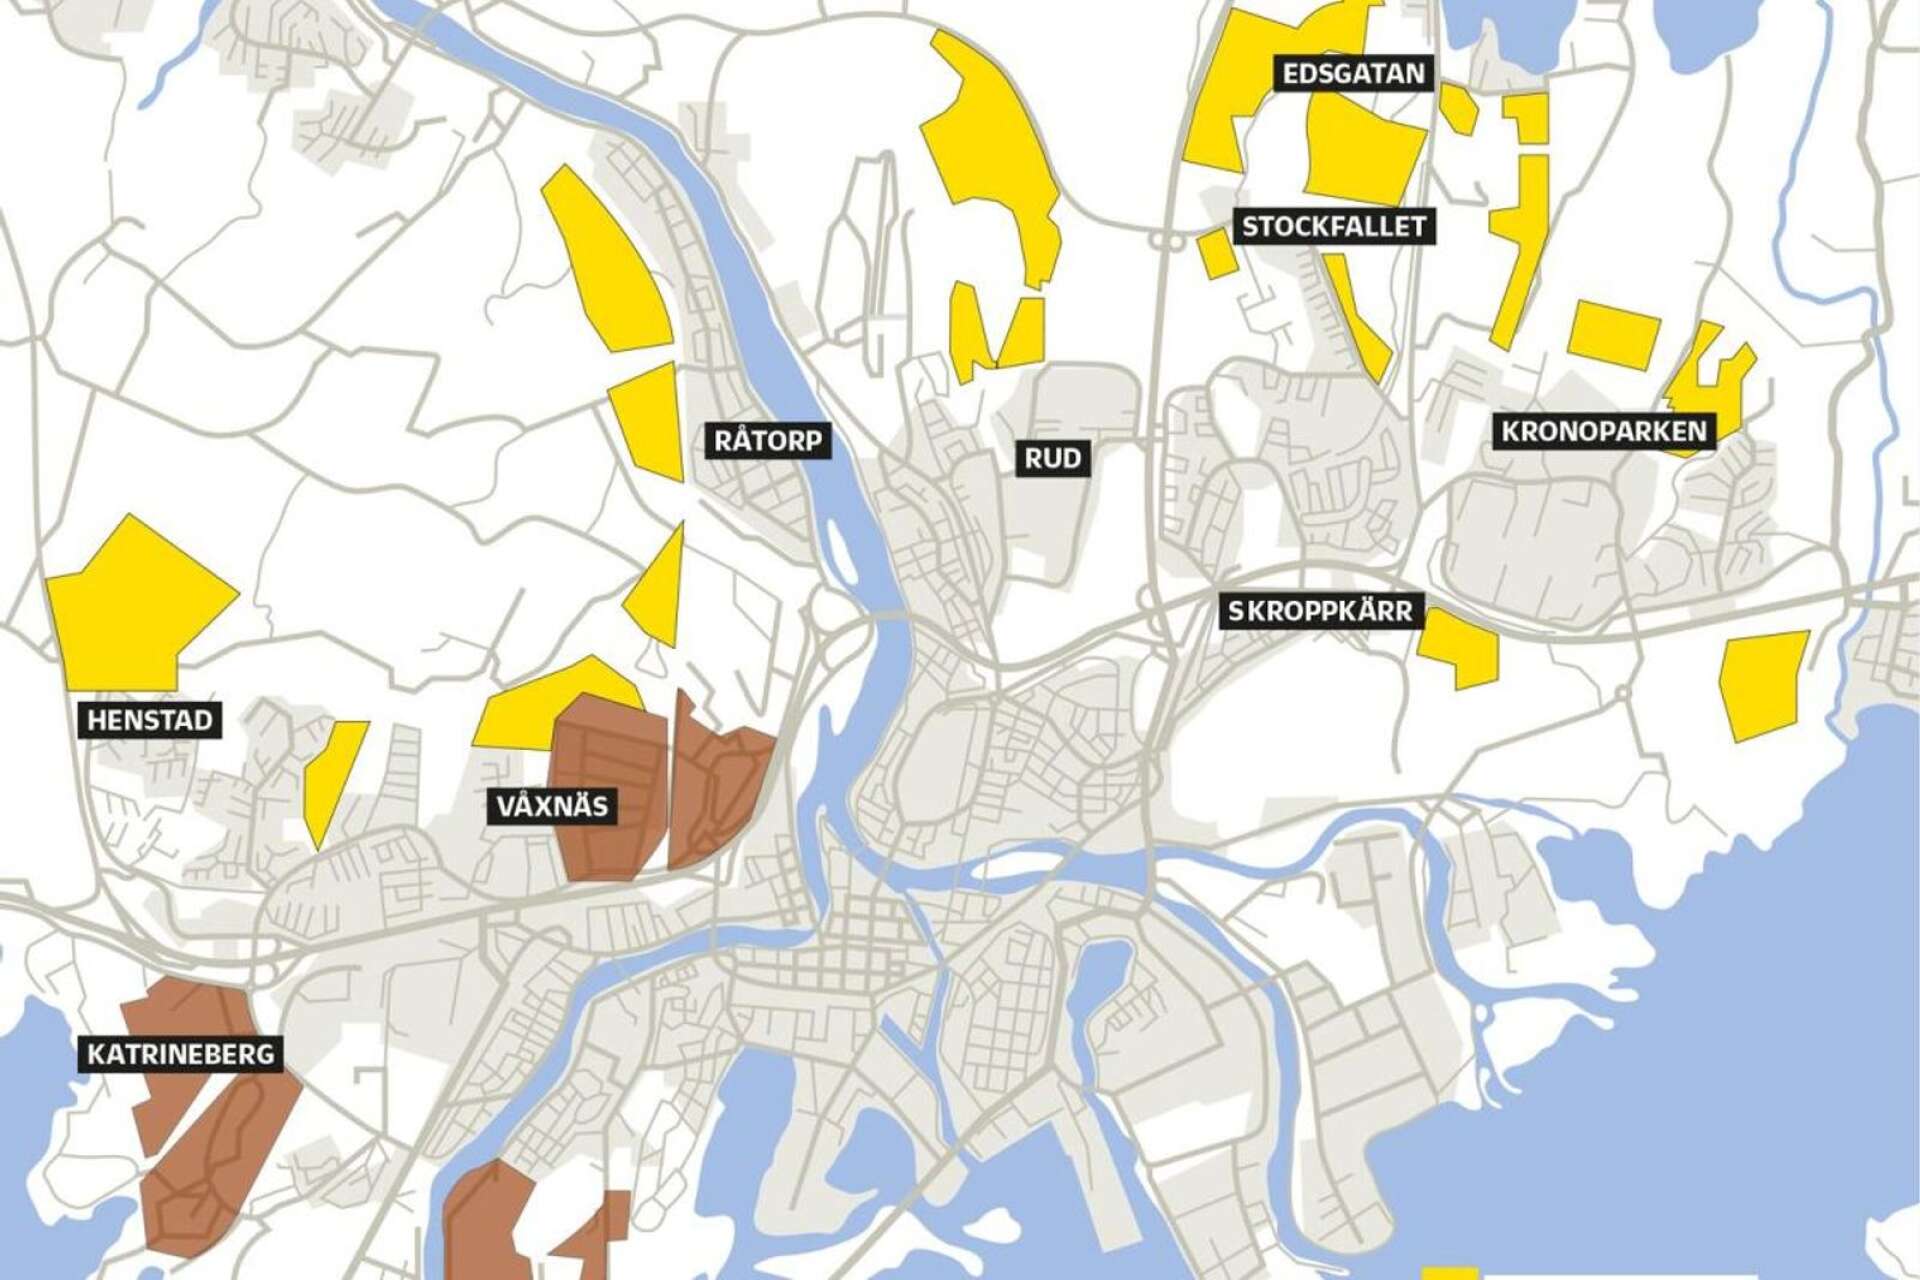 Det planeras för upp till 30 000 nya bostäder i Karlstad i den nya översiktsplanen som sträcker sig fram till 2050. De flesta hamnar i de områden som är markerade med gult på kartan.